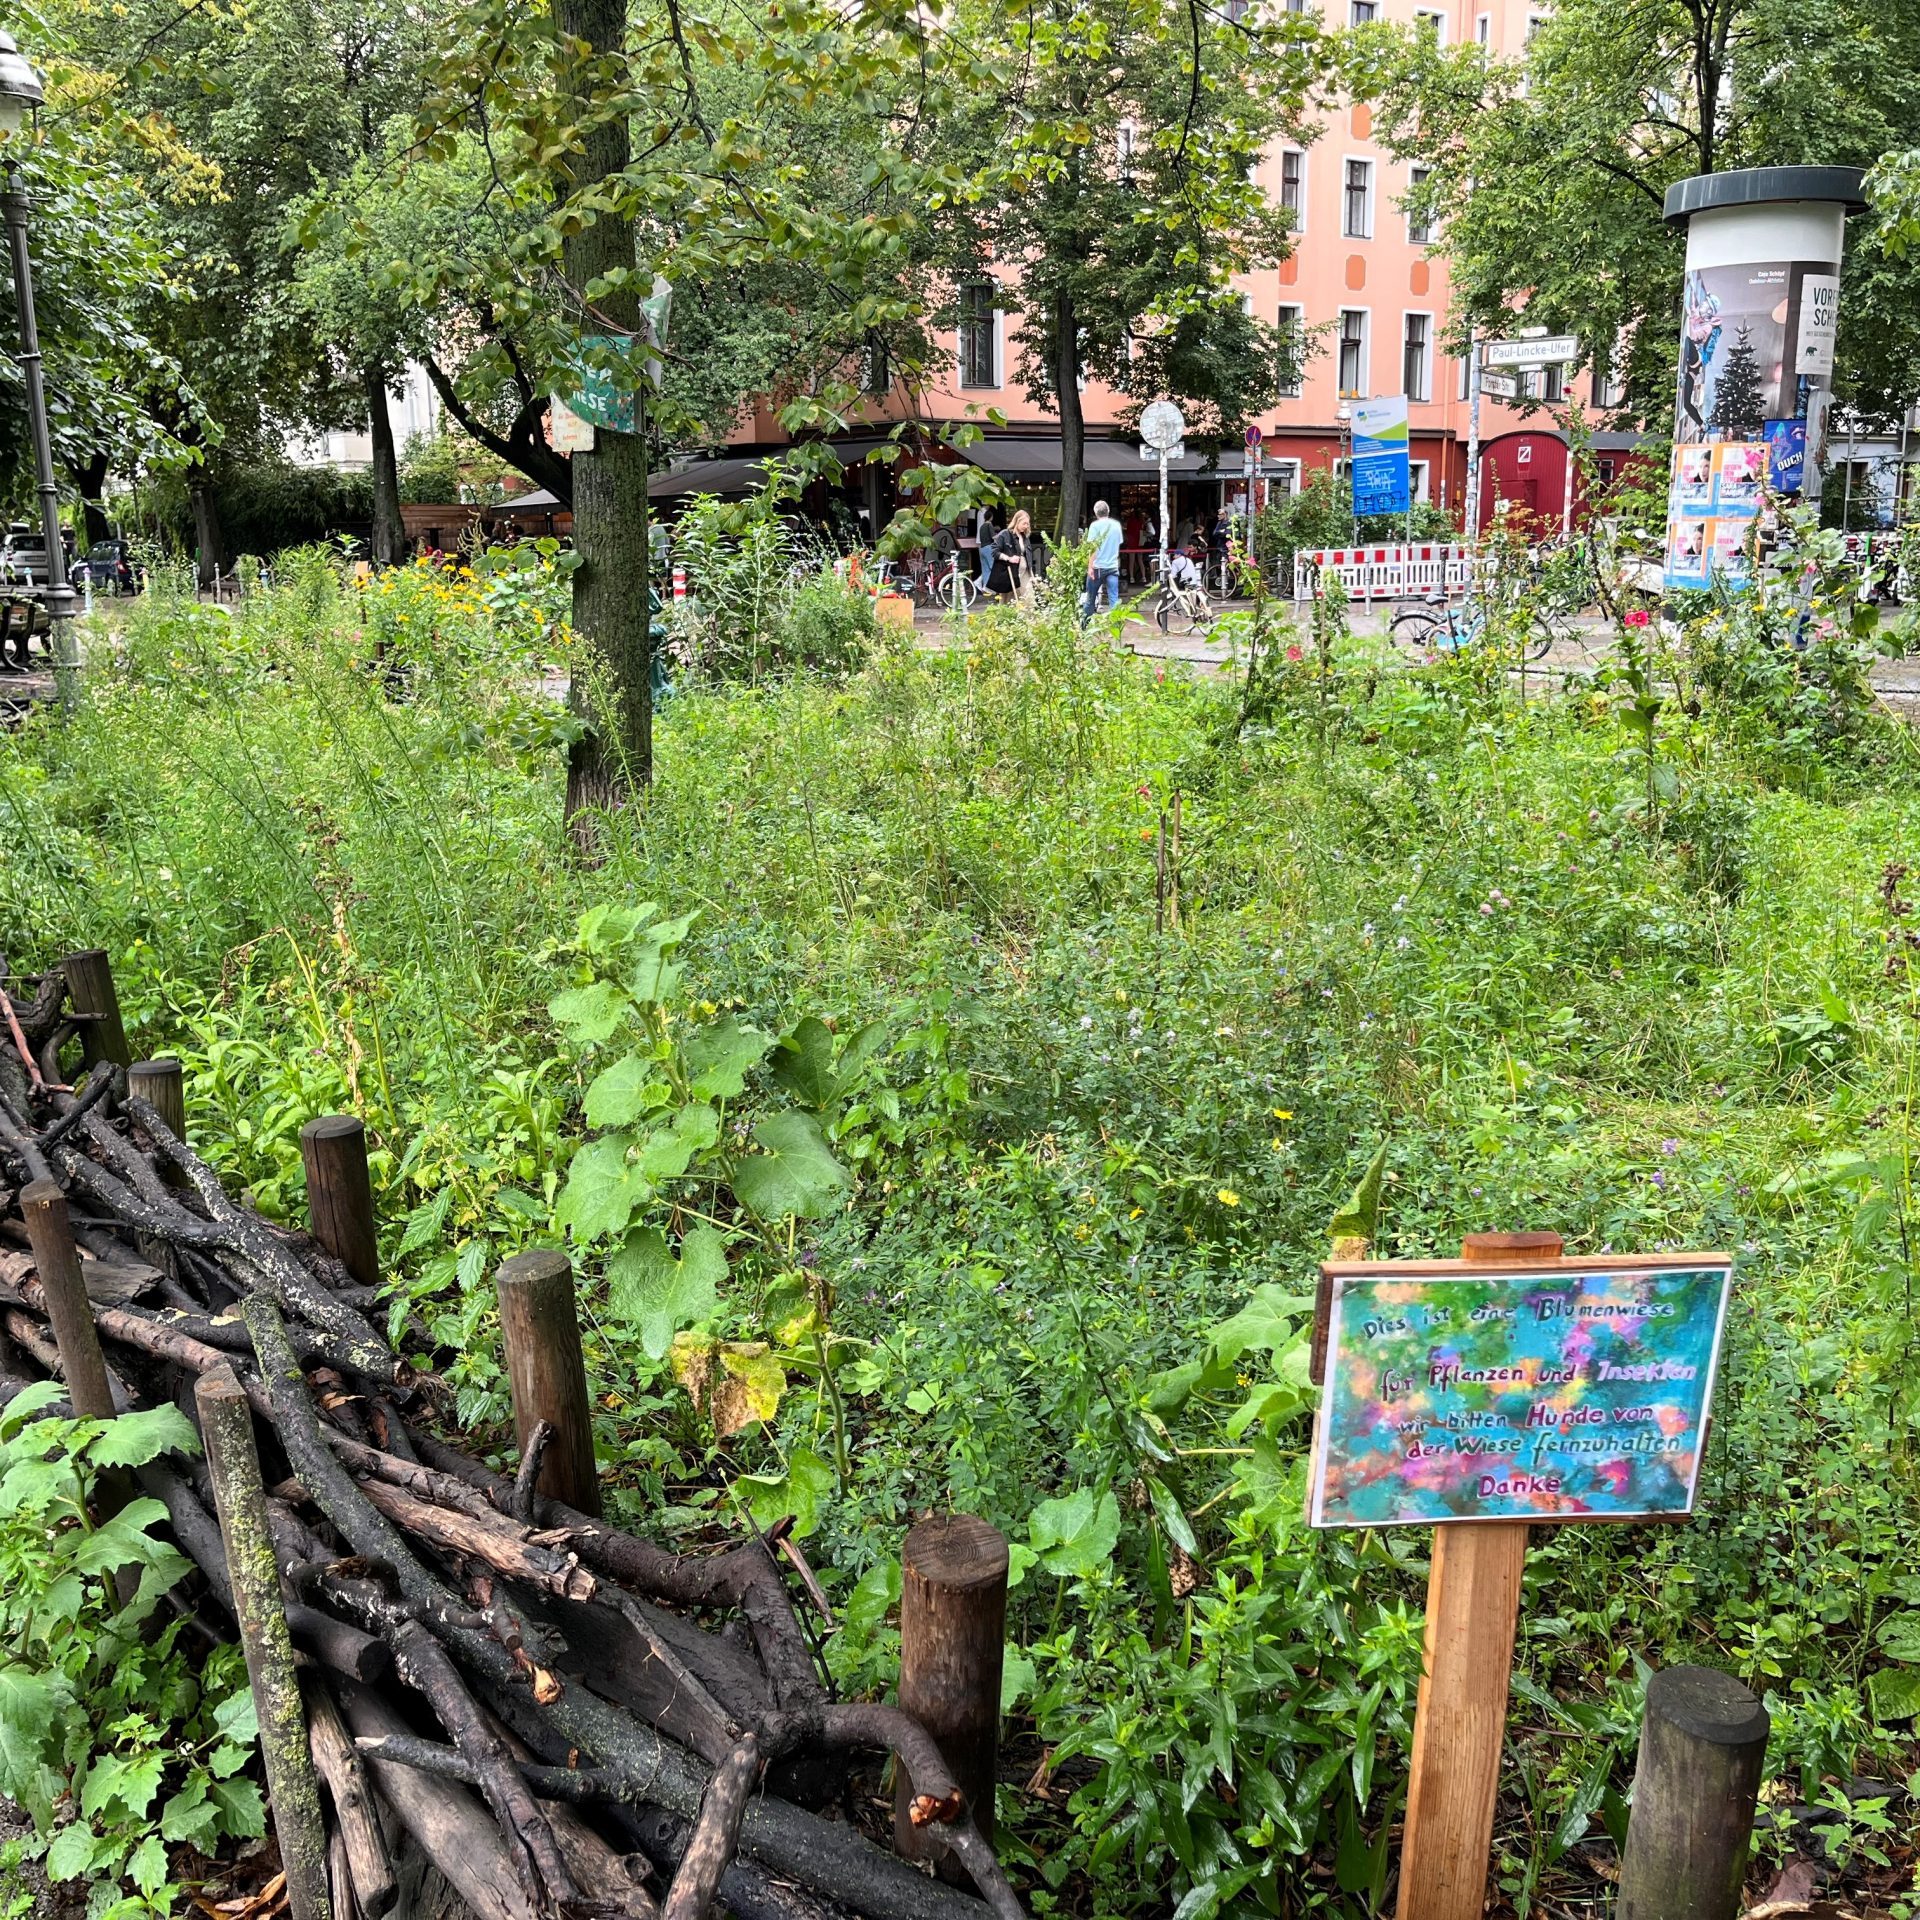 Das Bild zeigt eine Blumenwiese auf einer kleinen begrünten Fläche in Berlin. Die Blumenwiese wird von einer Totholzhecke umrahmt.